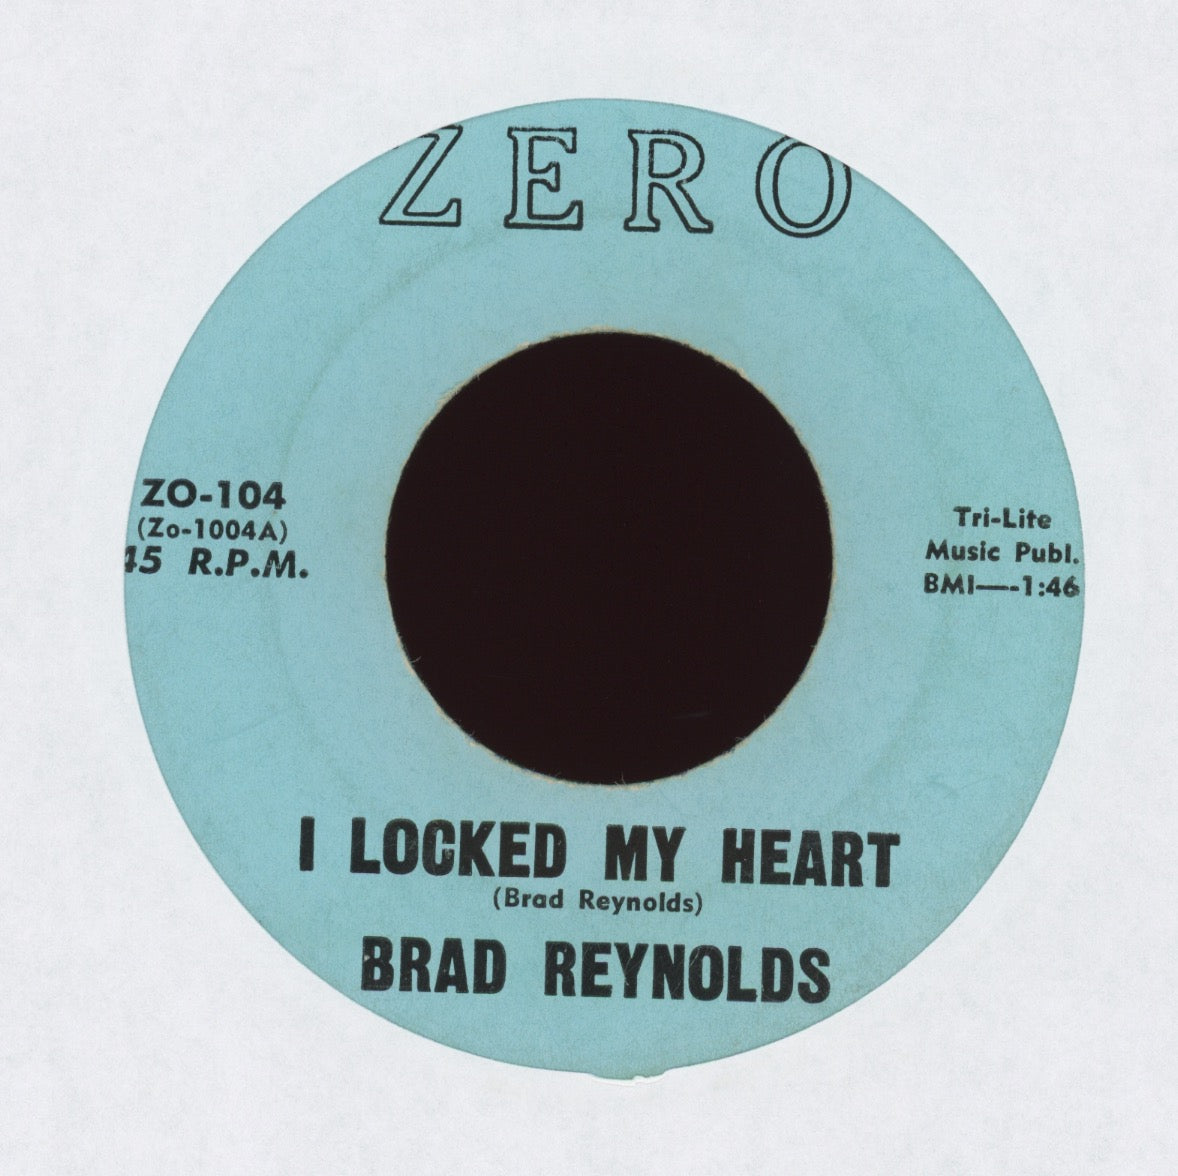 Brad Reynolds - I Locked My Heart on Zero